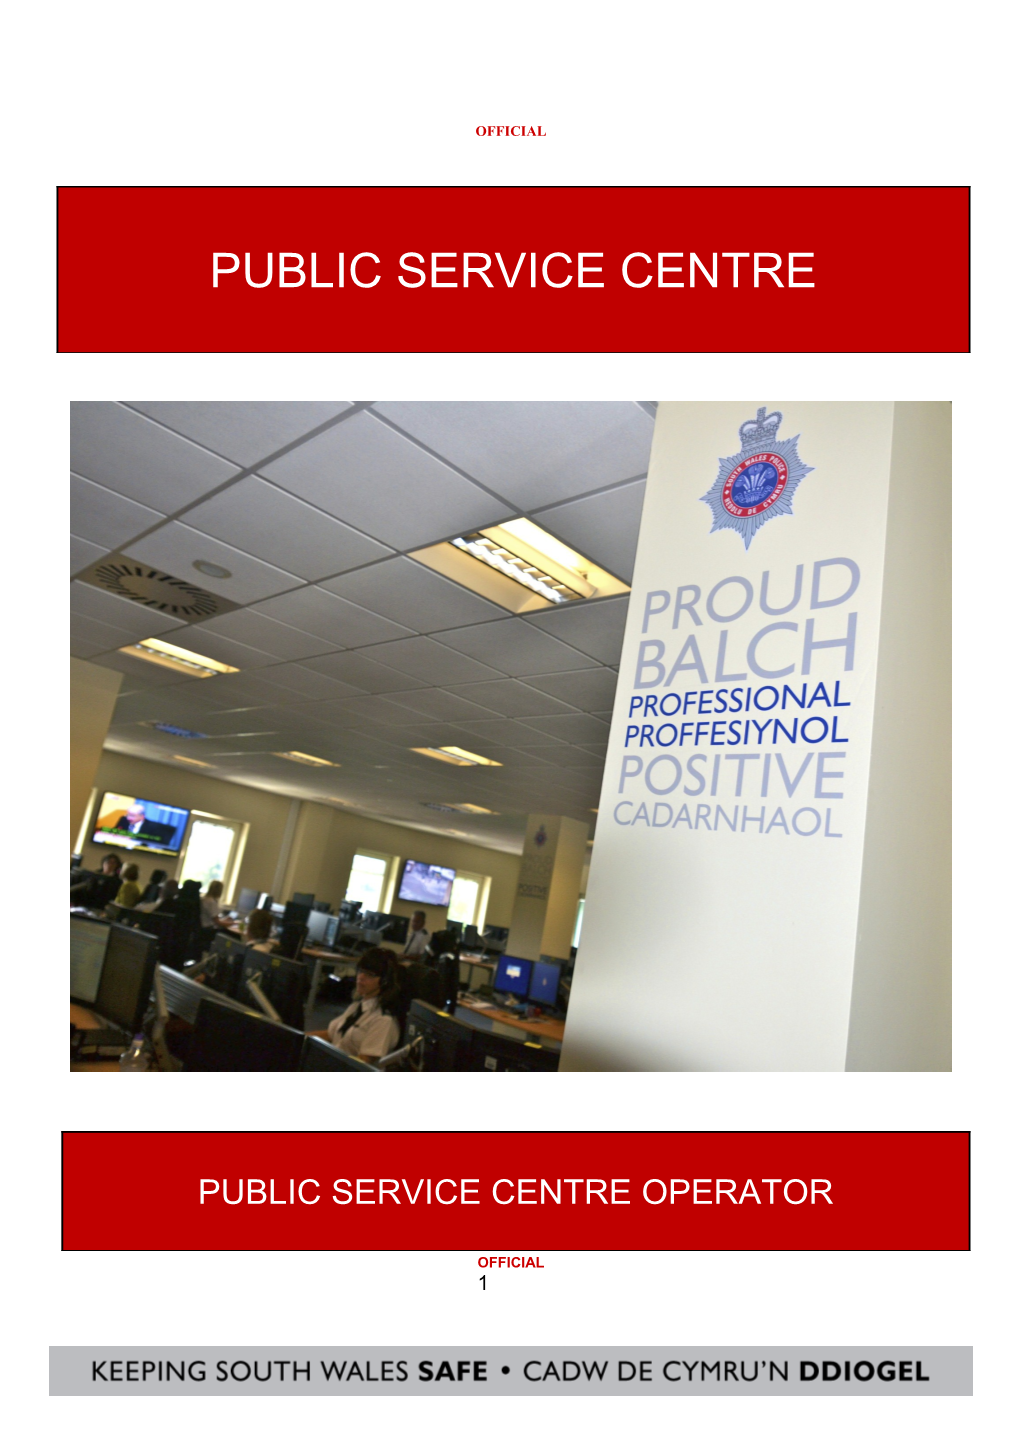 1. About the Public Service Centre